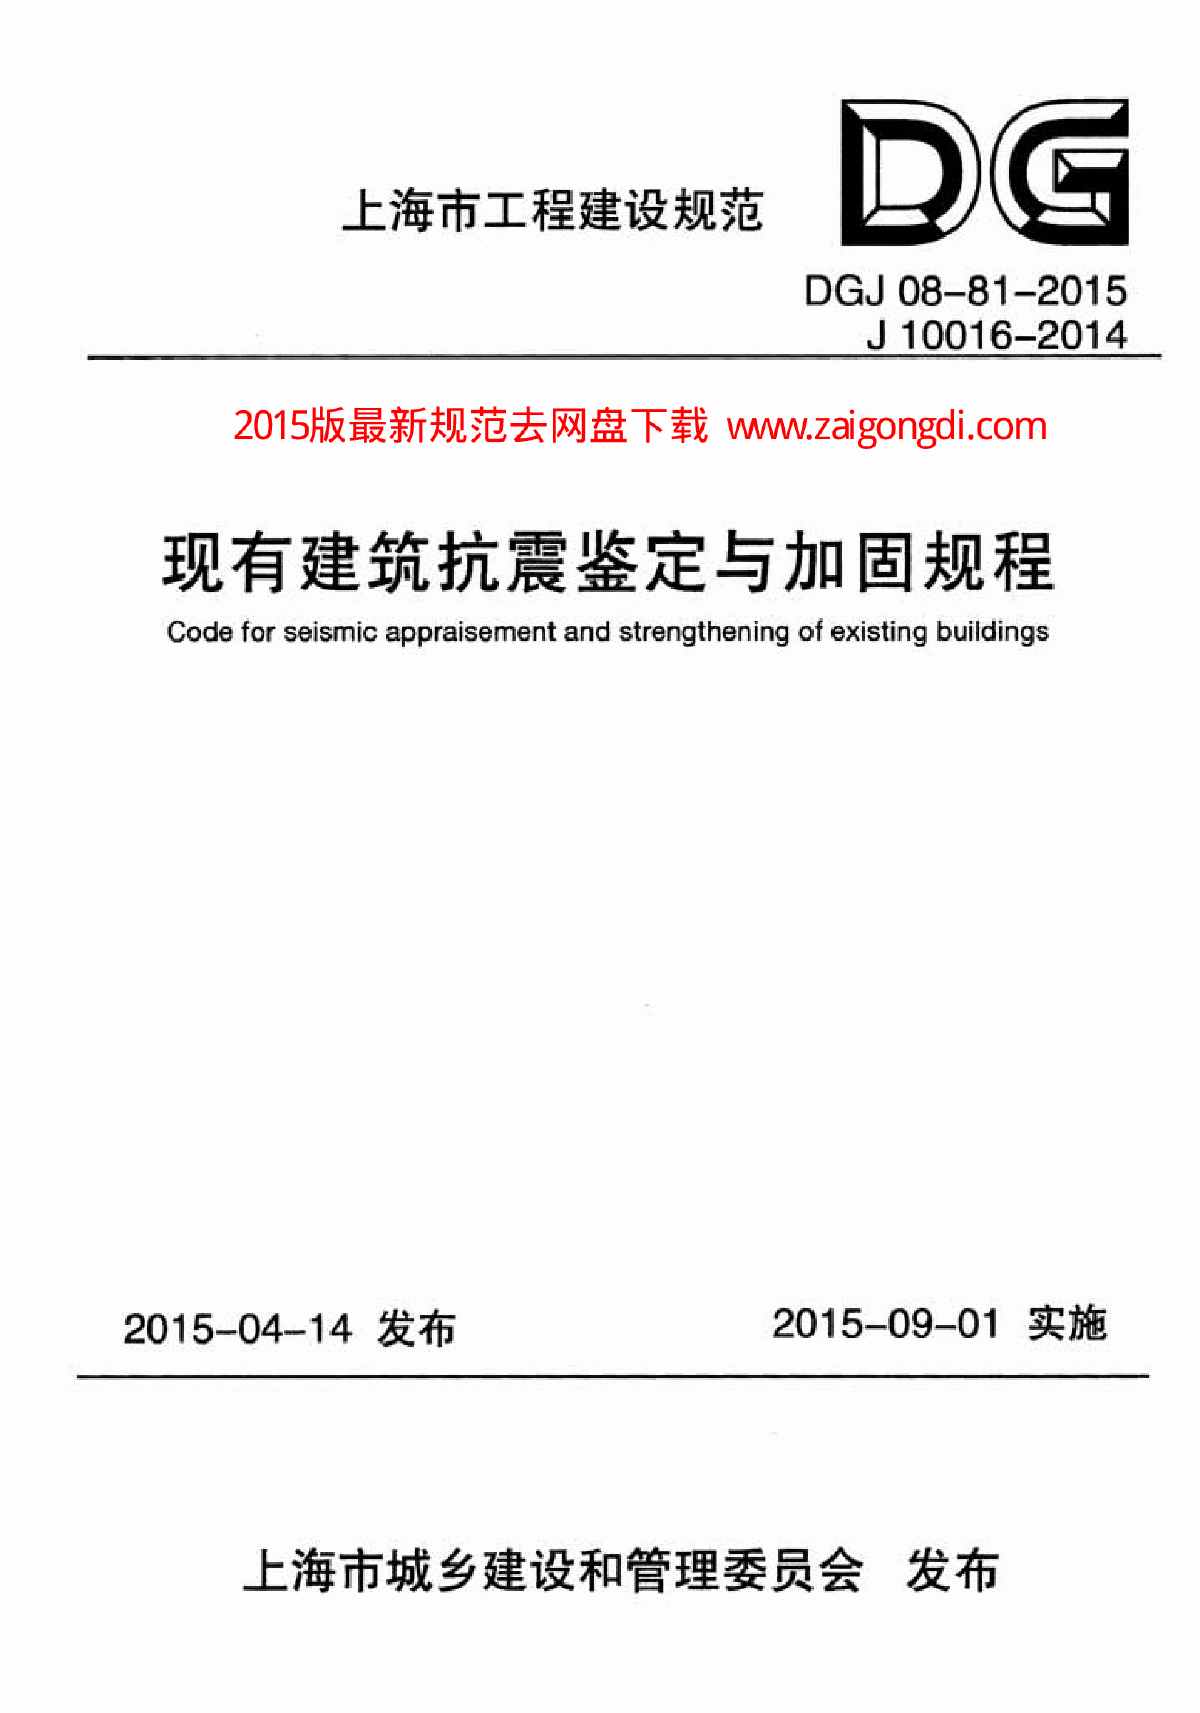 DGJ 08-81-2015 现有建筑抗震鉴定与加固规程-图一